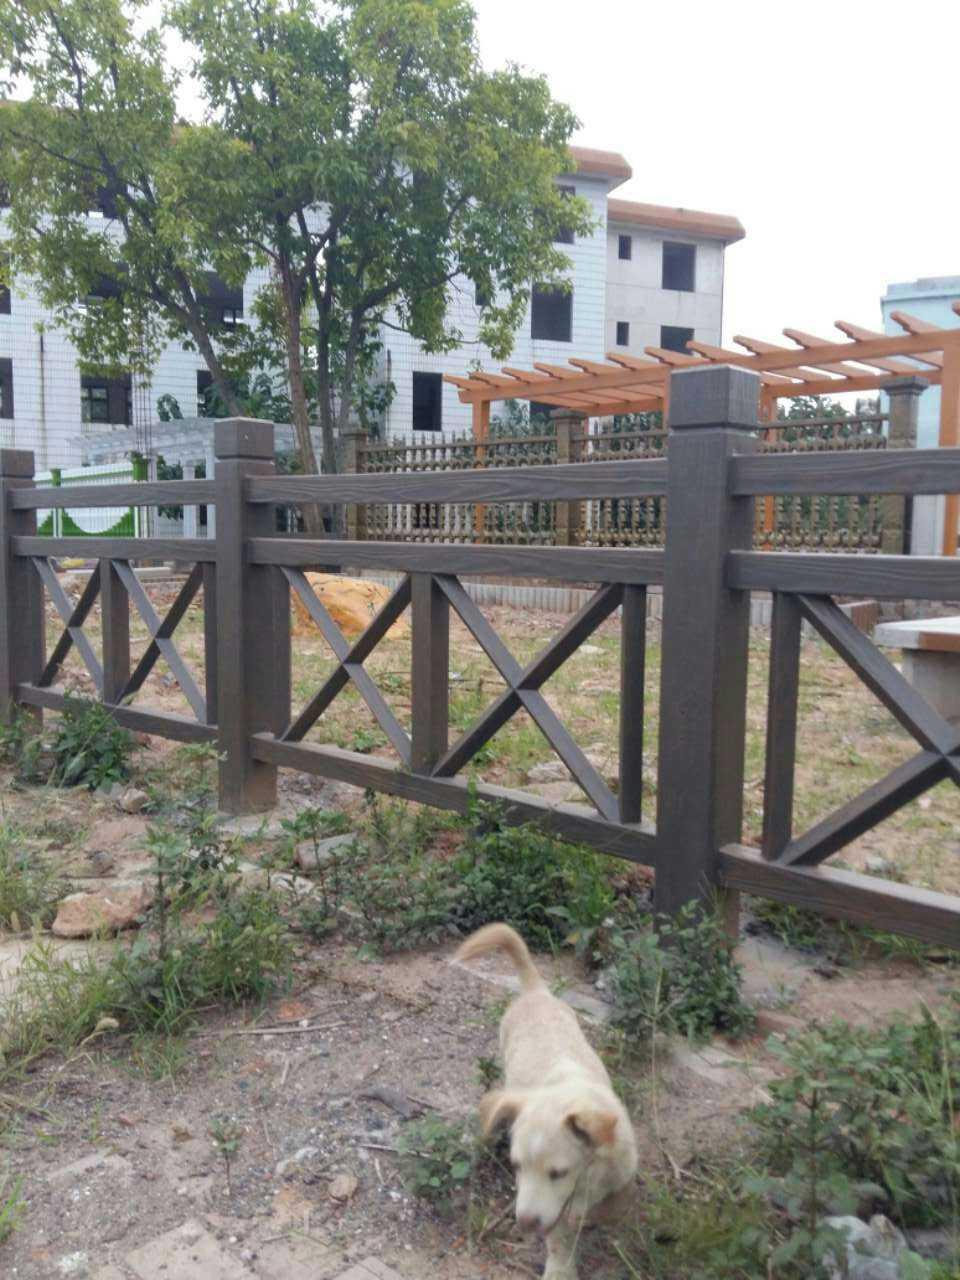 江西水泥艺术仿木护栏围栏栏杆专业施工